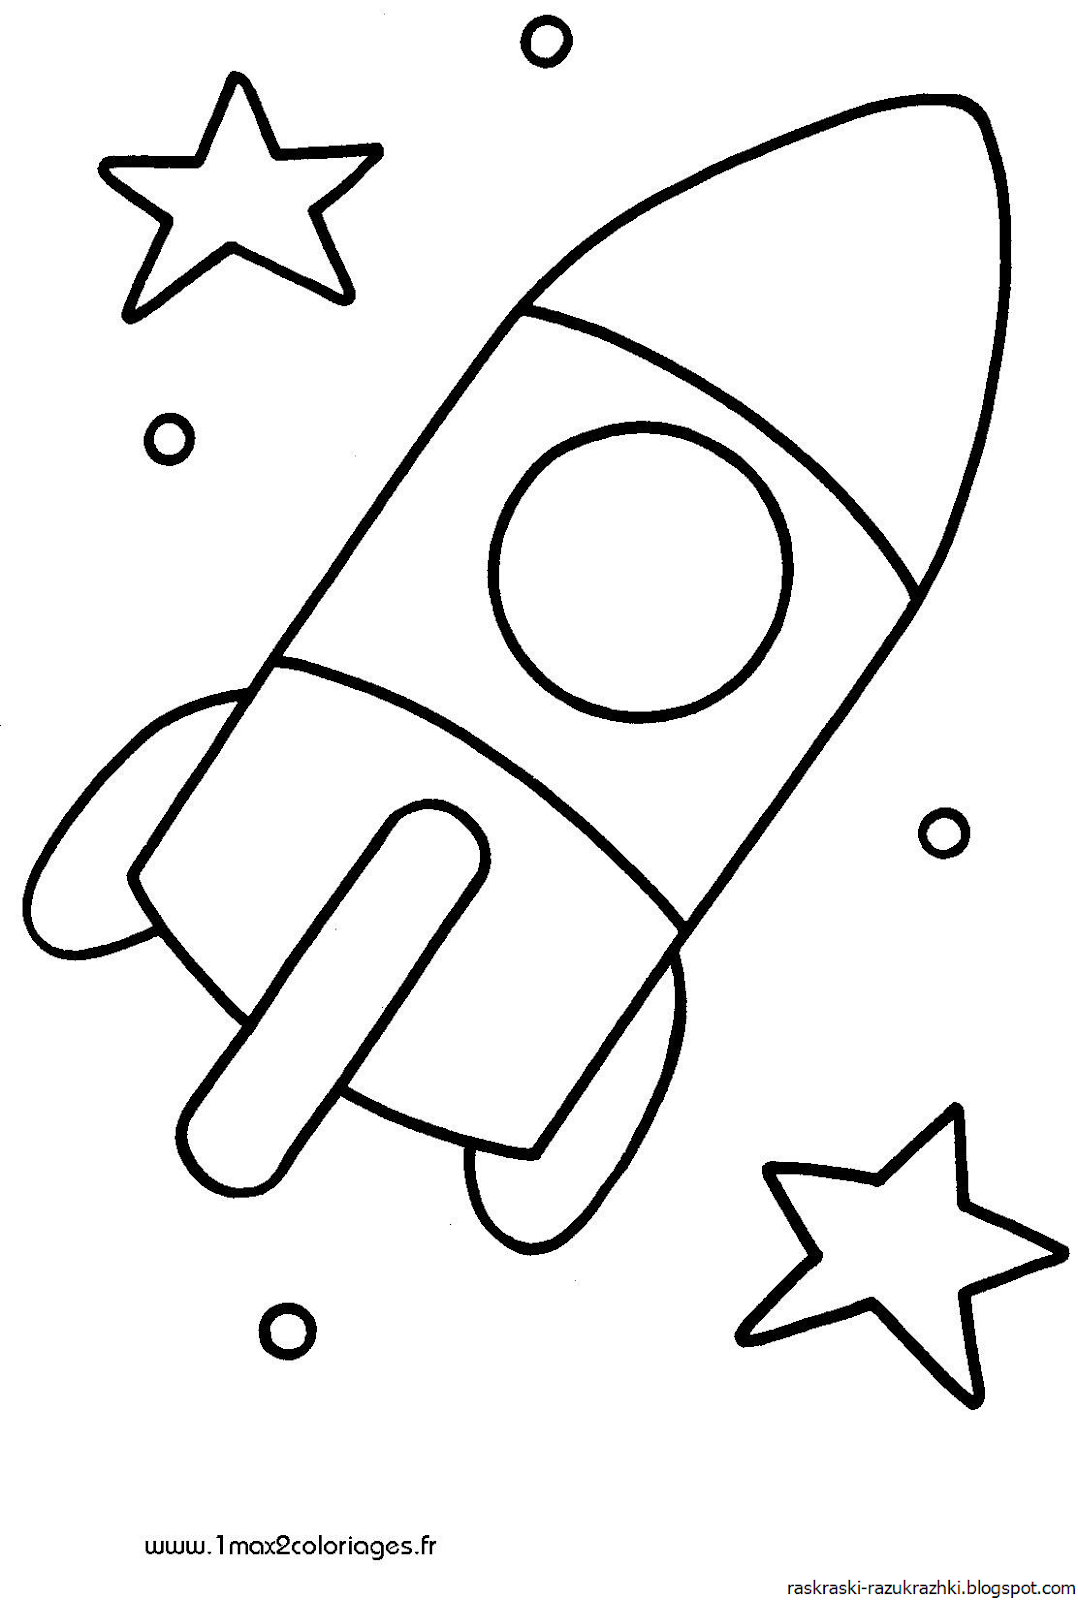 Раскраска ракета для детей 4 лет. Ракета раскраска. Ракета раскраска для малышей. Раскраски на тему космос для детей 3-4 лет. Раскраска для малышей. Космос.